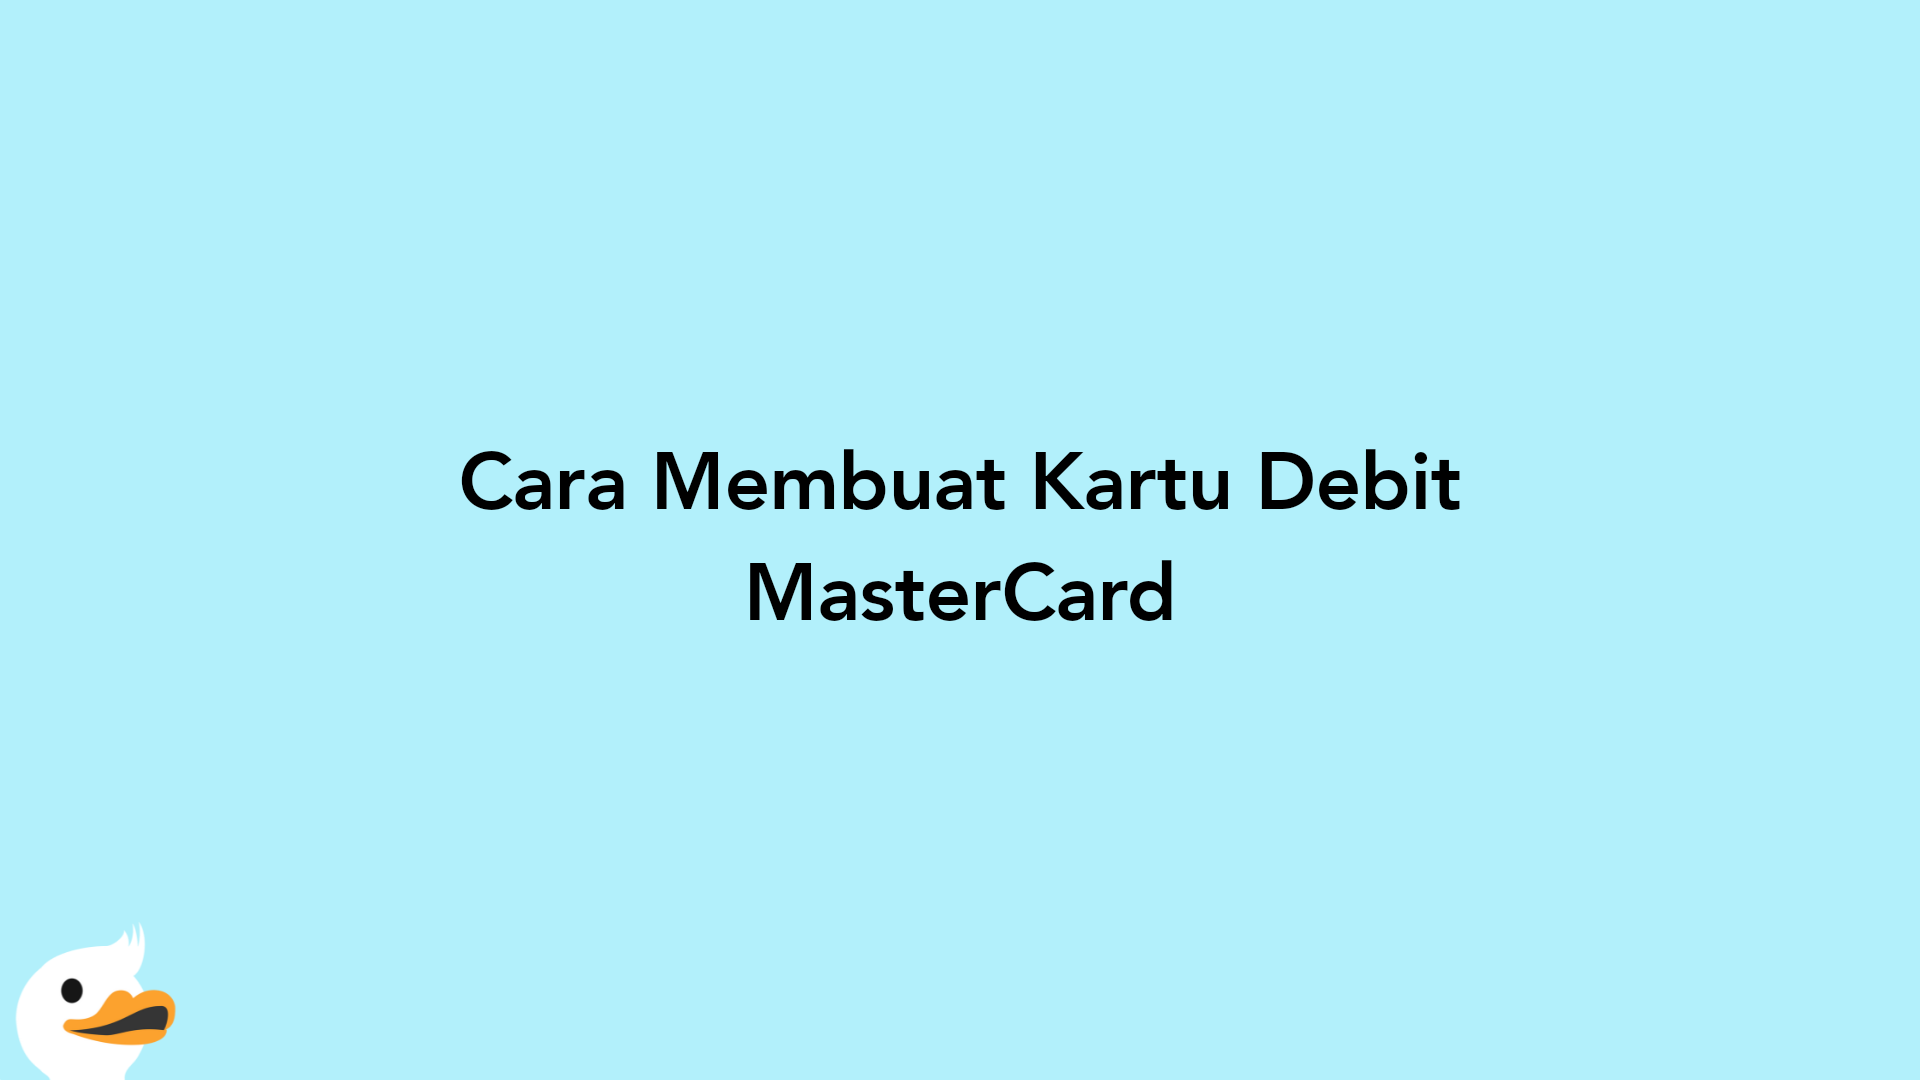 Cara Membuat Kartu Debit MasterCard